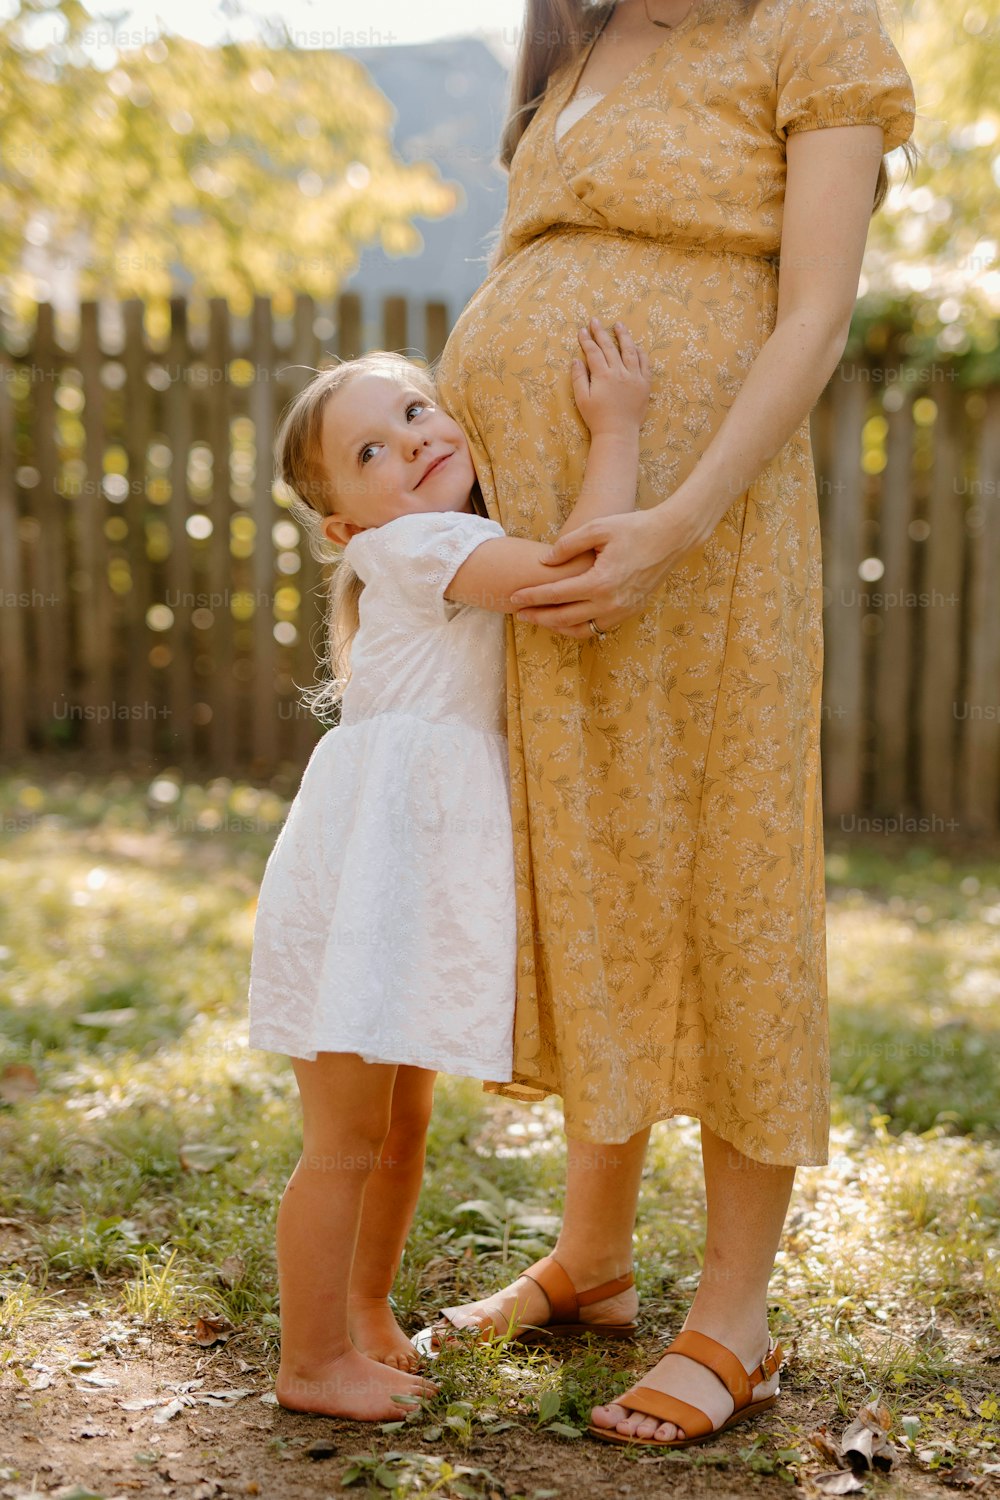 eine schwangere Frau, die ein kleines Kind im Arm hält